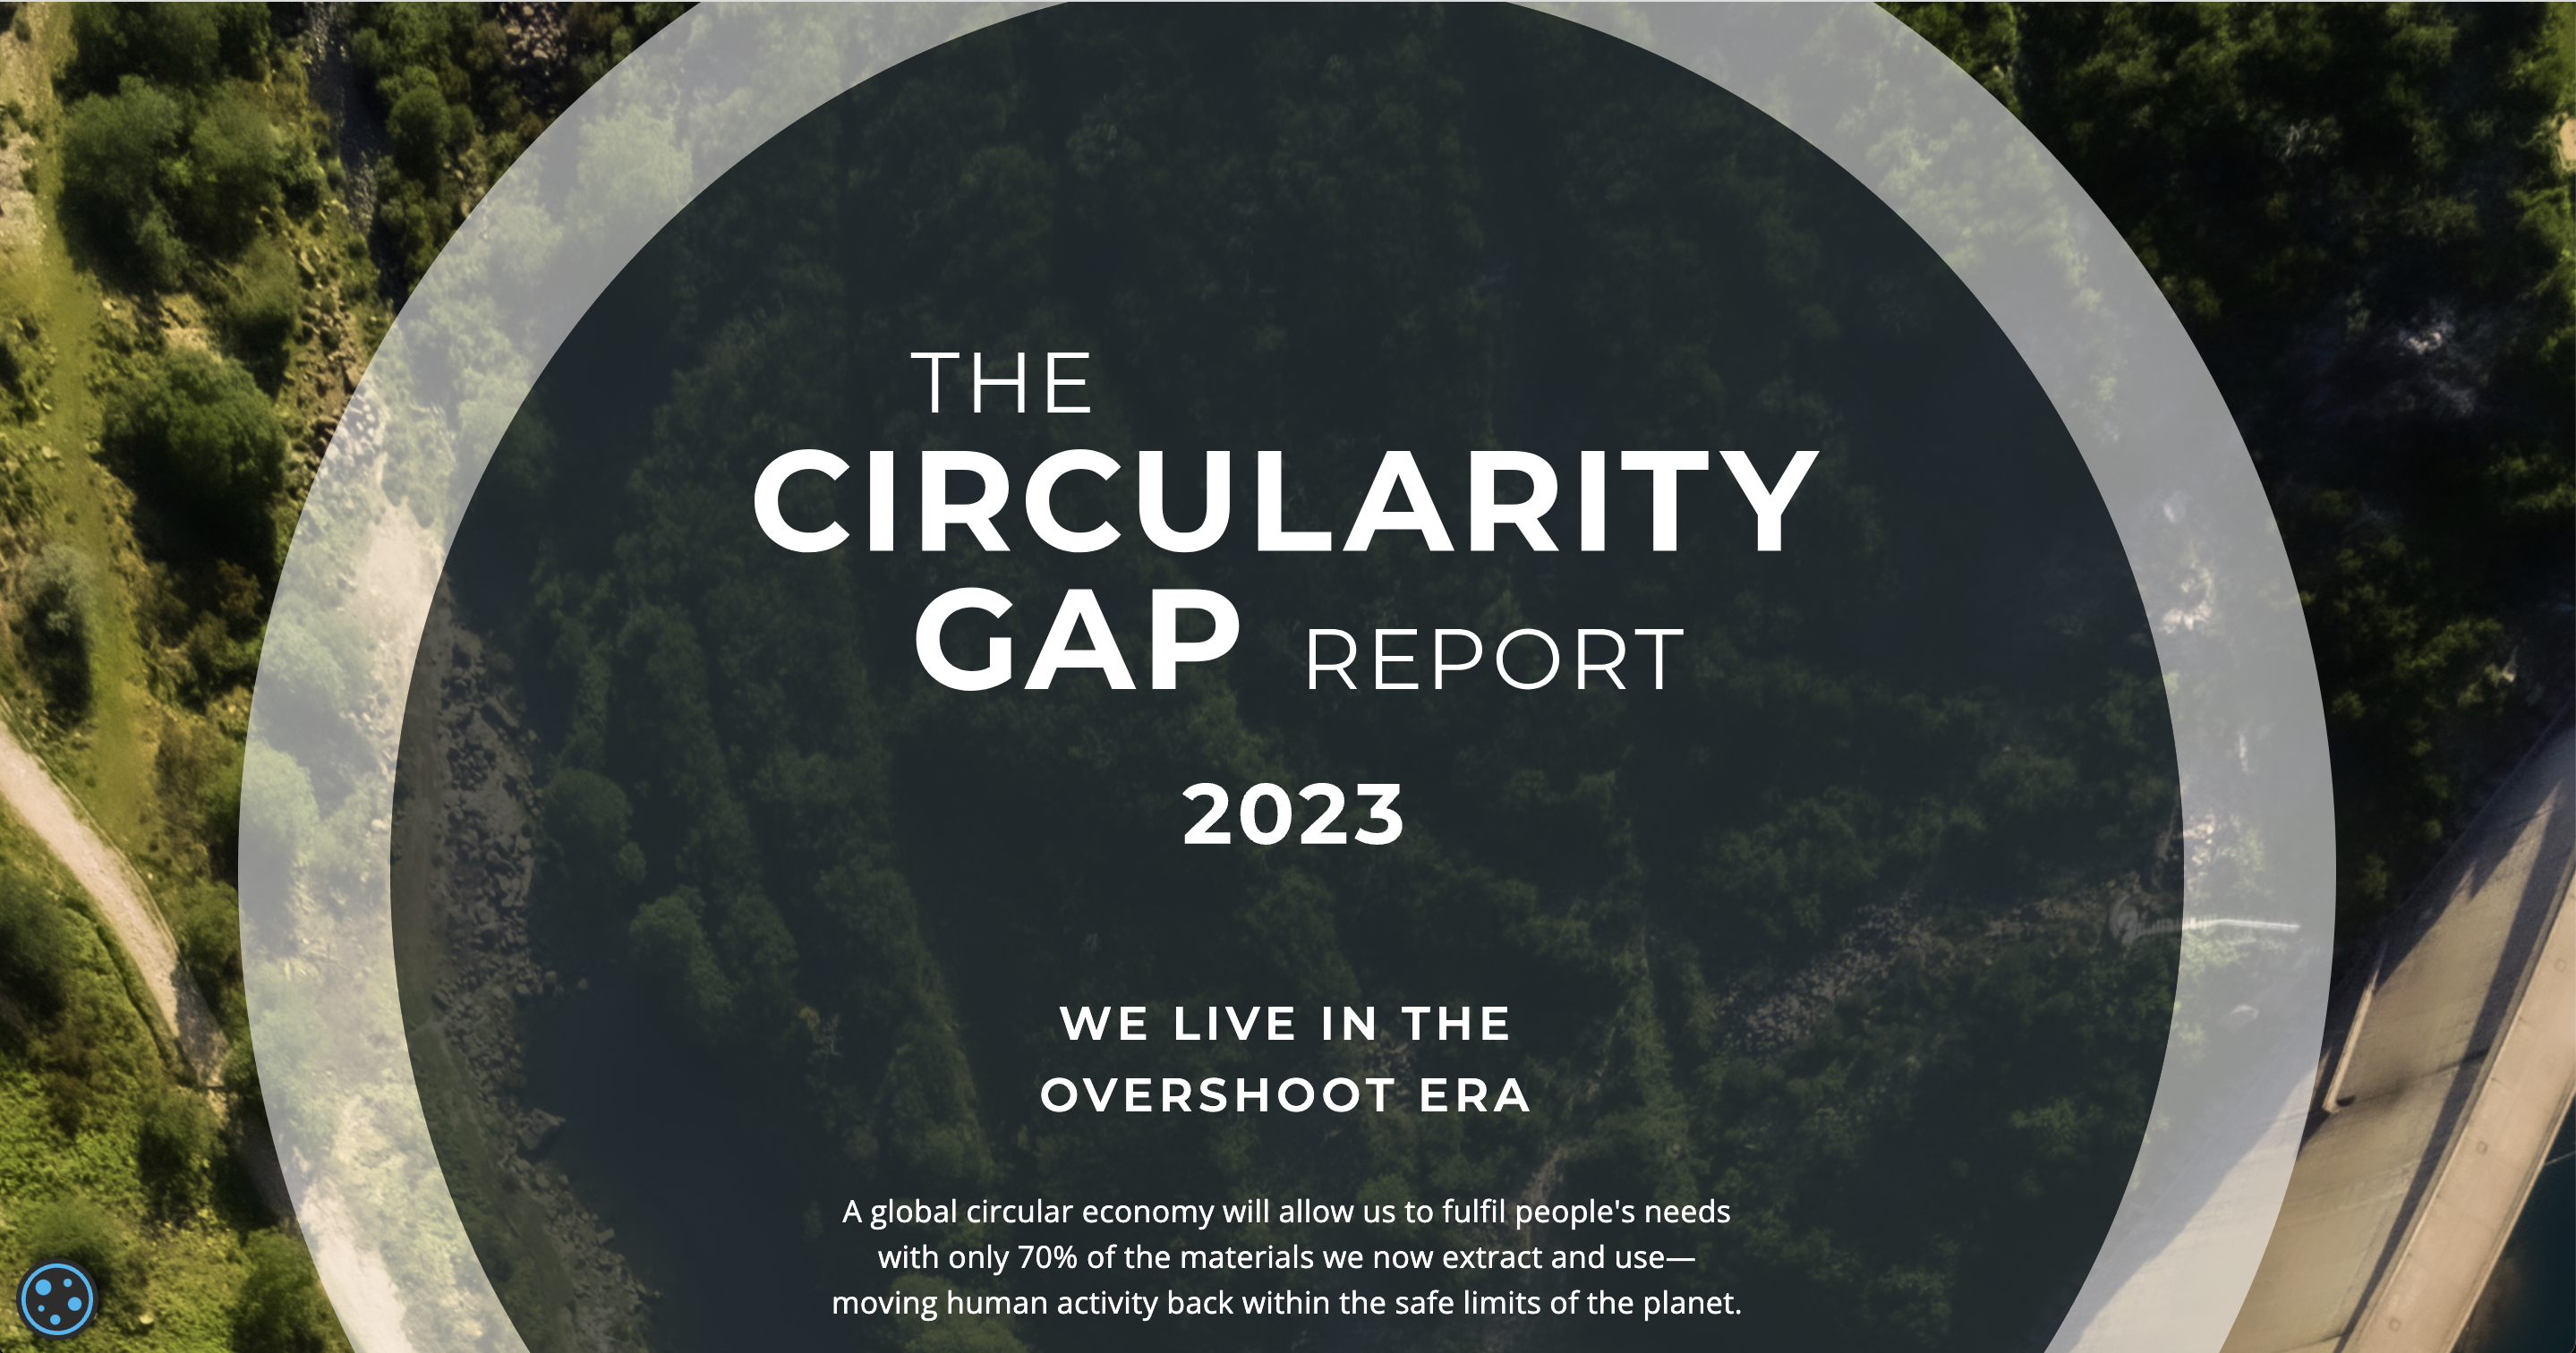 “The Circularity Gap Report” 2023